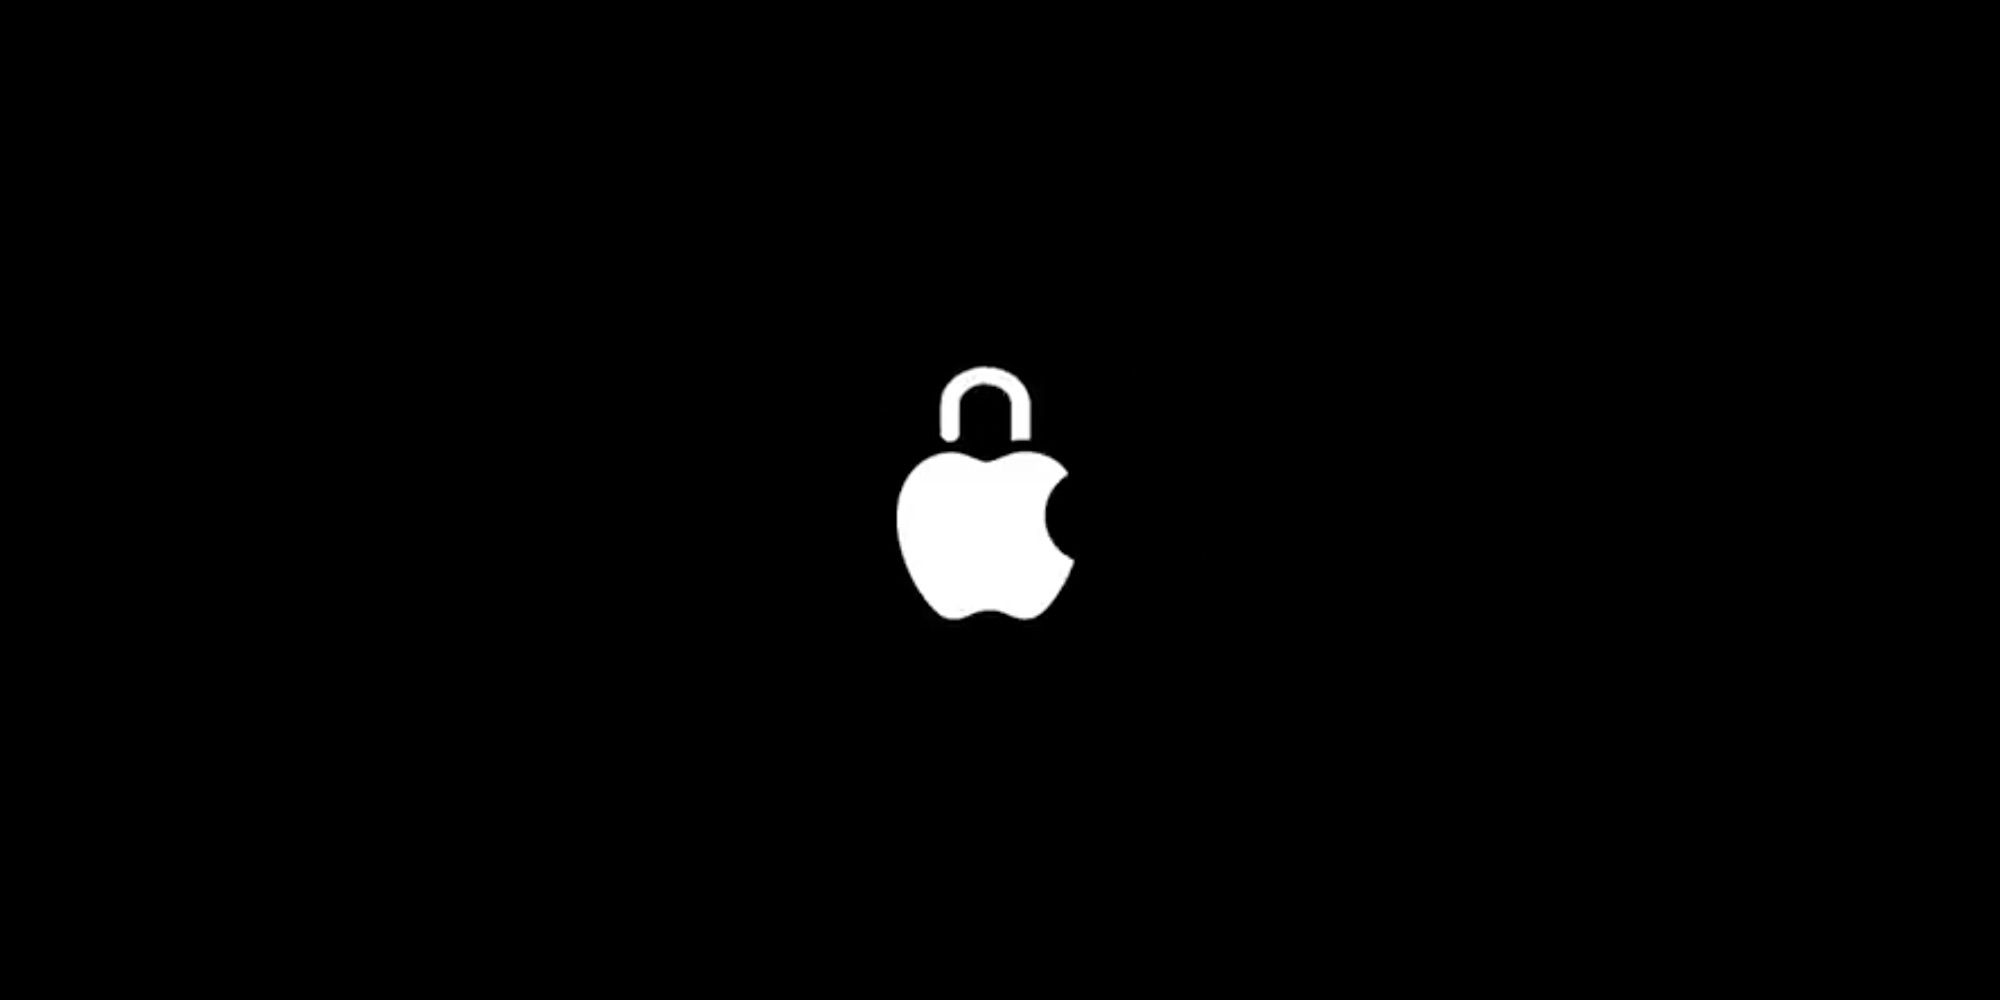 Apple выпустила фрагмент презентации, посвященный вопросам конфиденциальности в iOS и macOS